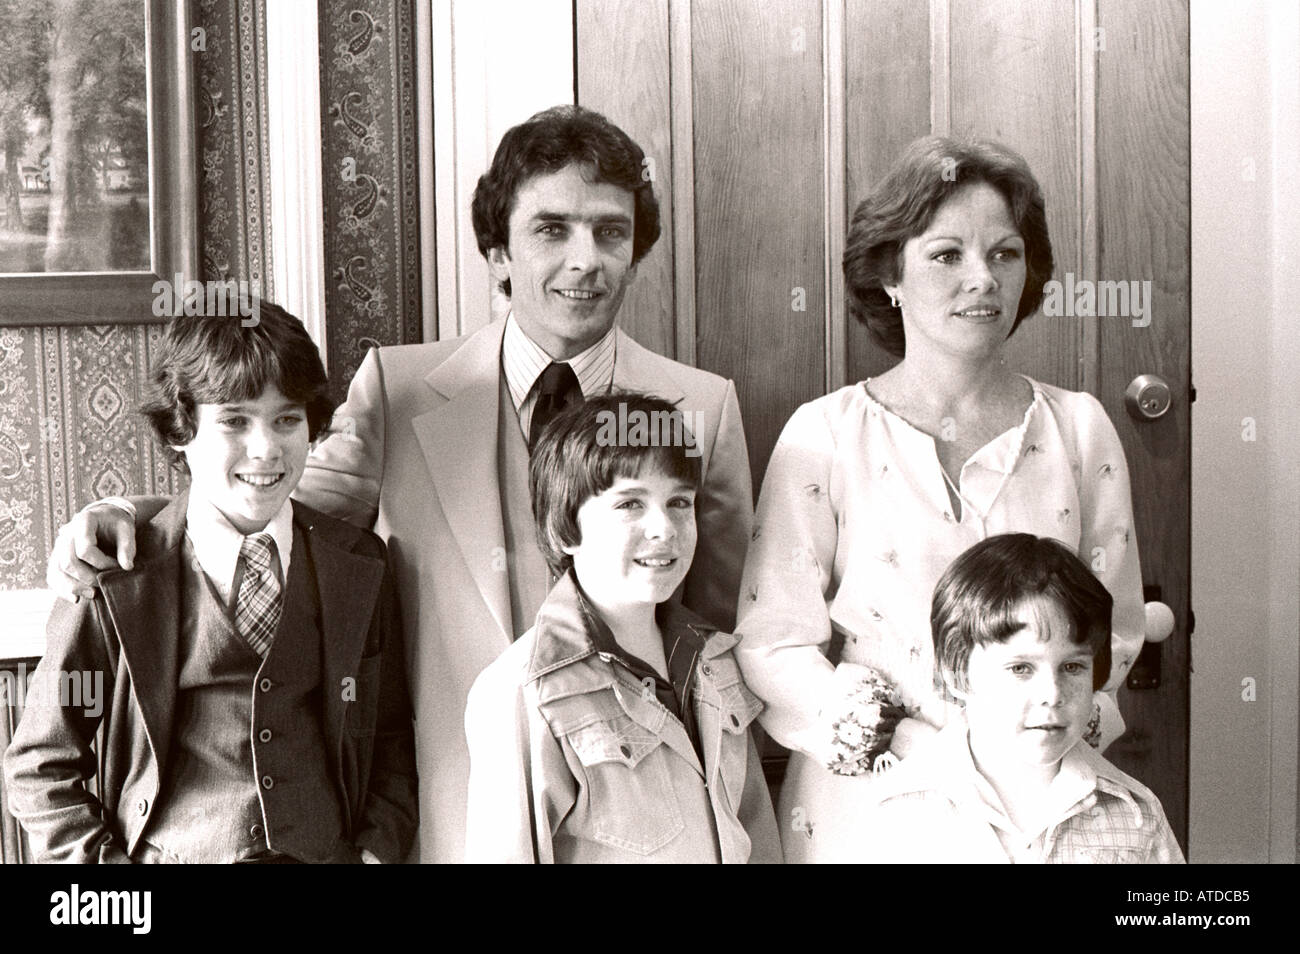 USA 1970er Jahre Young American Family 1970er Porträt bei Hochzeitsfeier 'Schwarz und weiß' 'irischer Herkunft' Eltern Kinder, Vintage-amerikanische Fotos Stockfoto